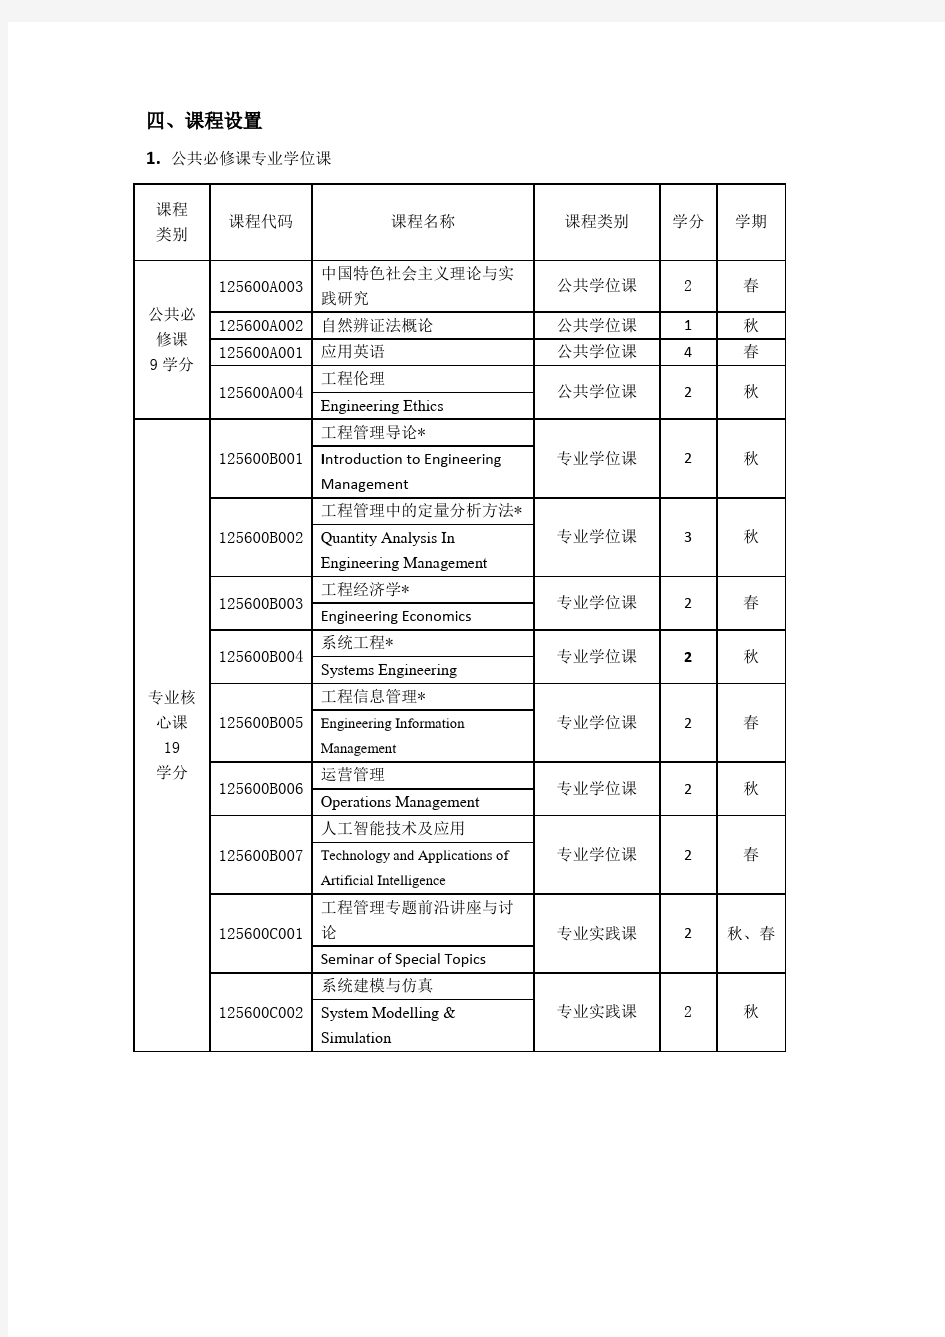 1256 南京大学工程管理学院工程管理硕士(MEM)培养方案(2019版)